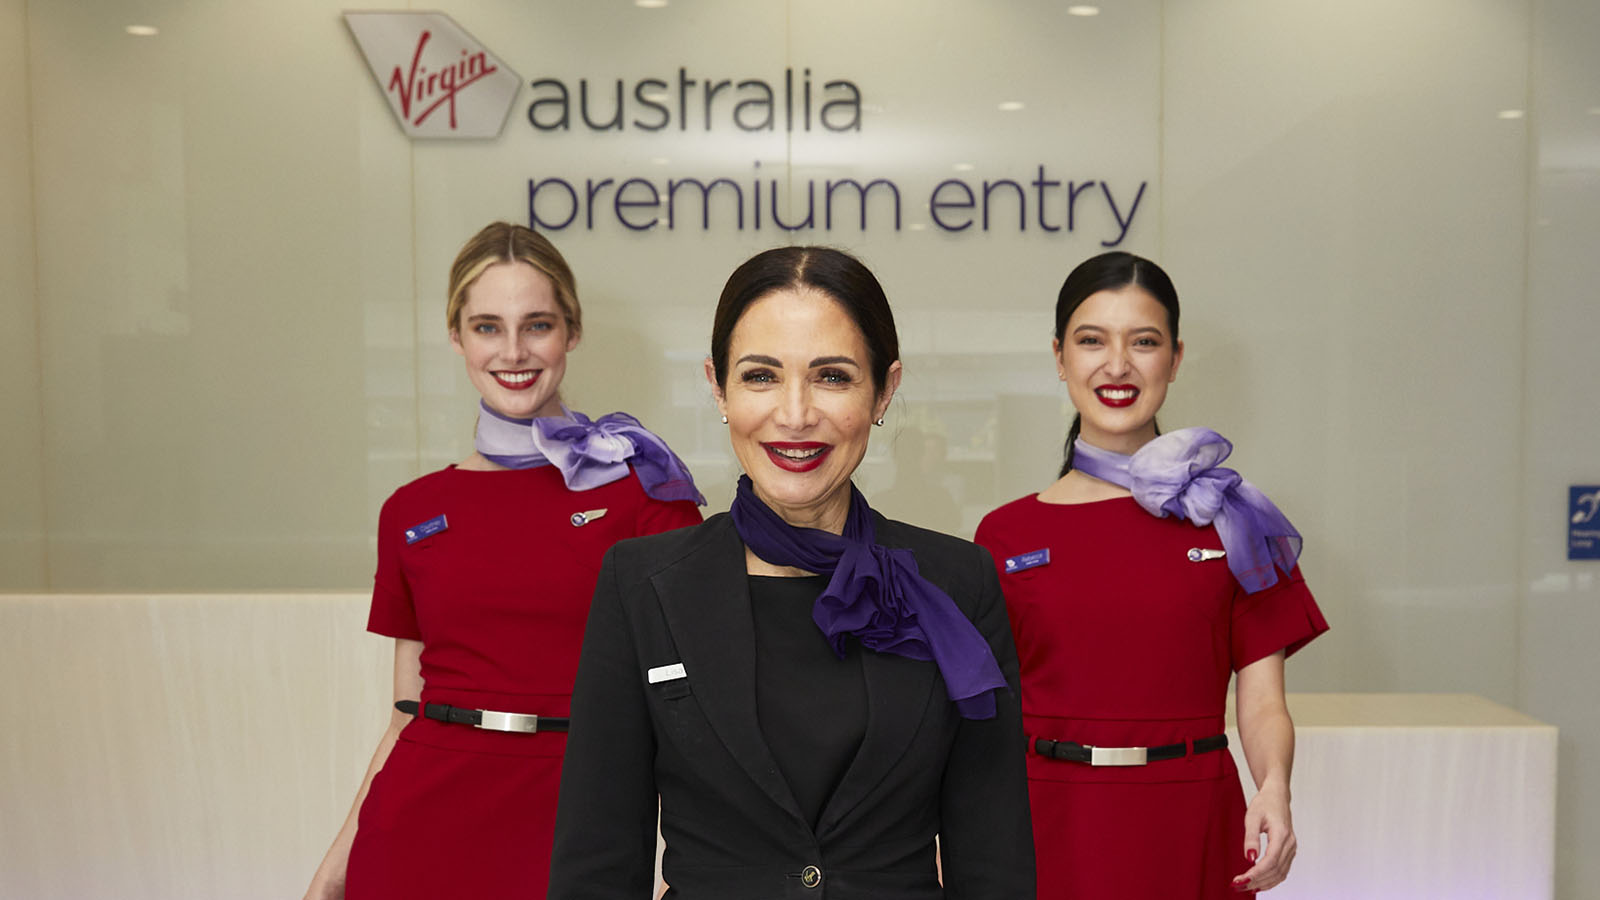 Virgin Australia Premium Entry